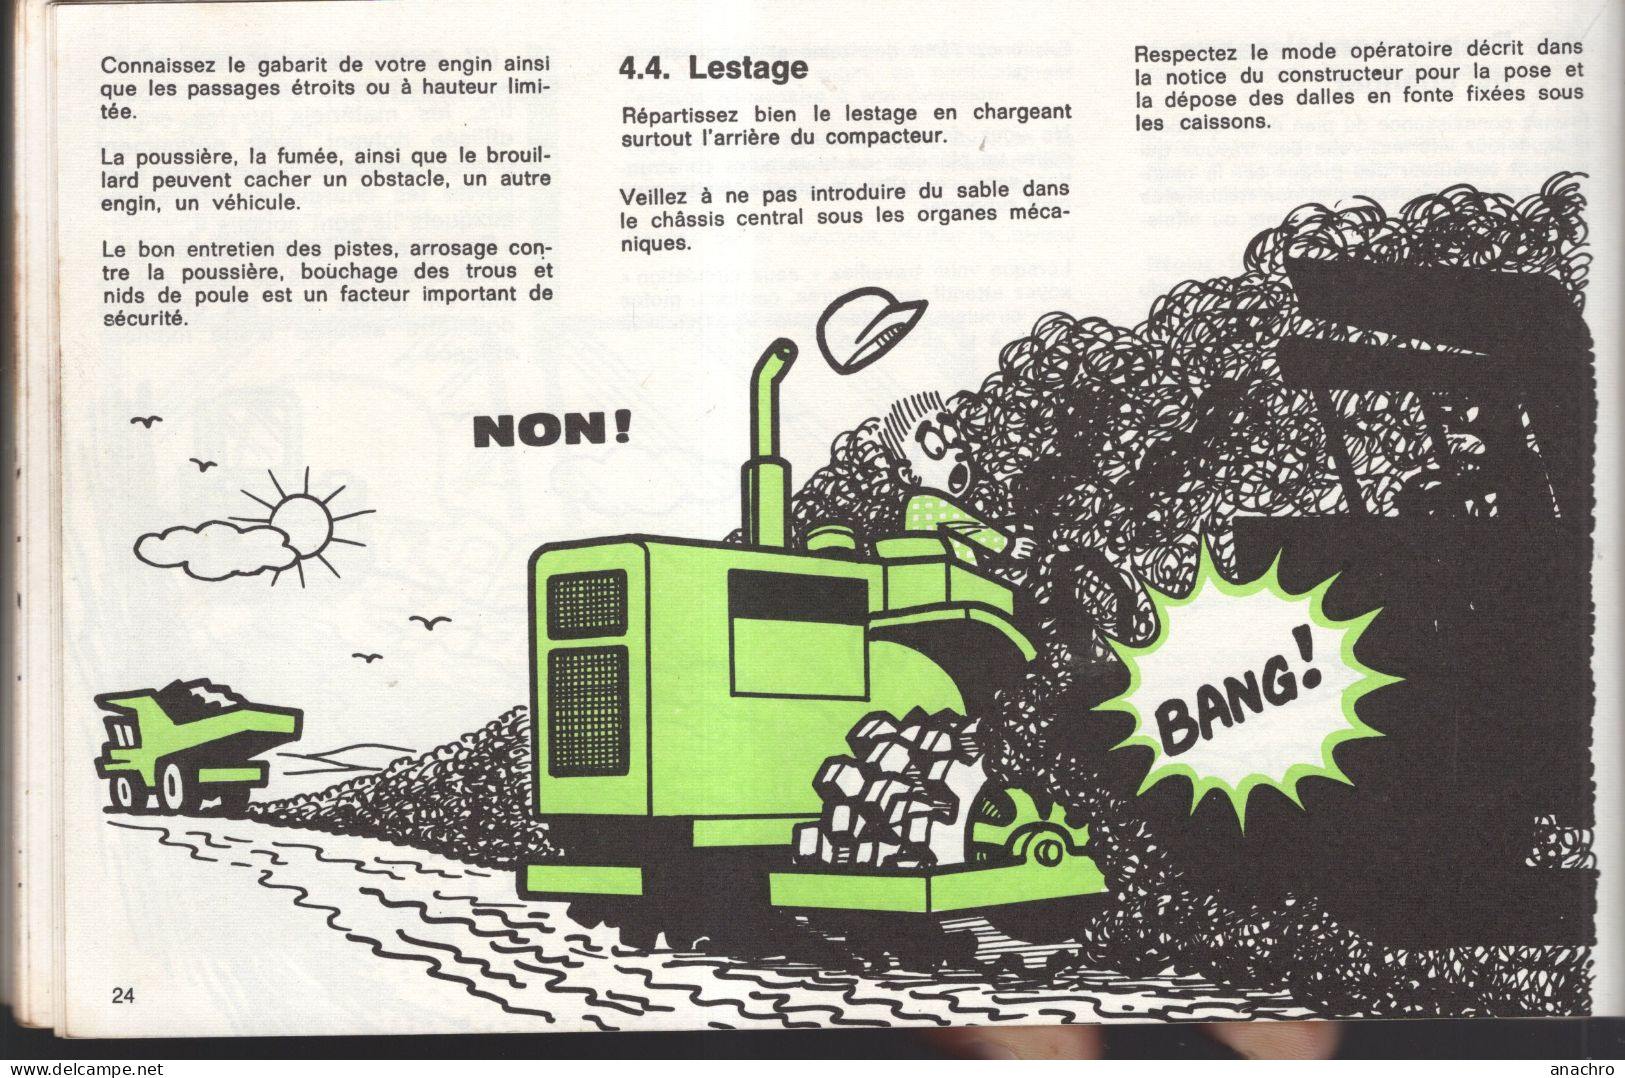 Catalogue 1977 SECURITE Engins De Chantier I.N.R.S. Rouleaux Et Compacteurs - Tracteurs